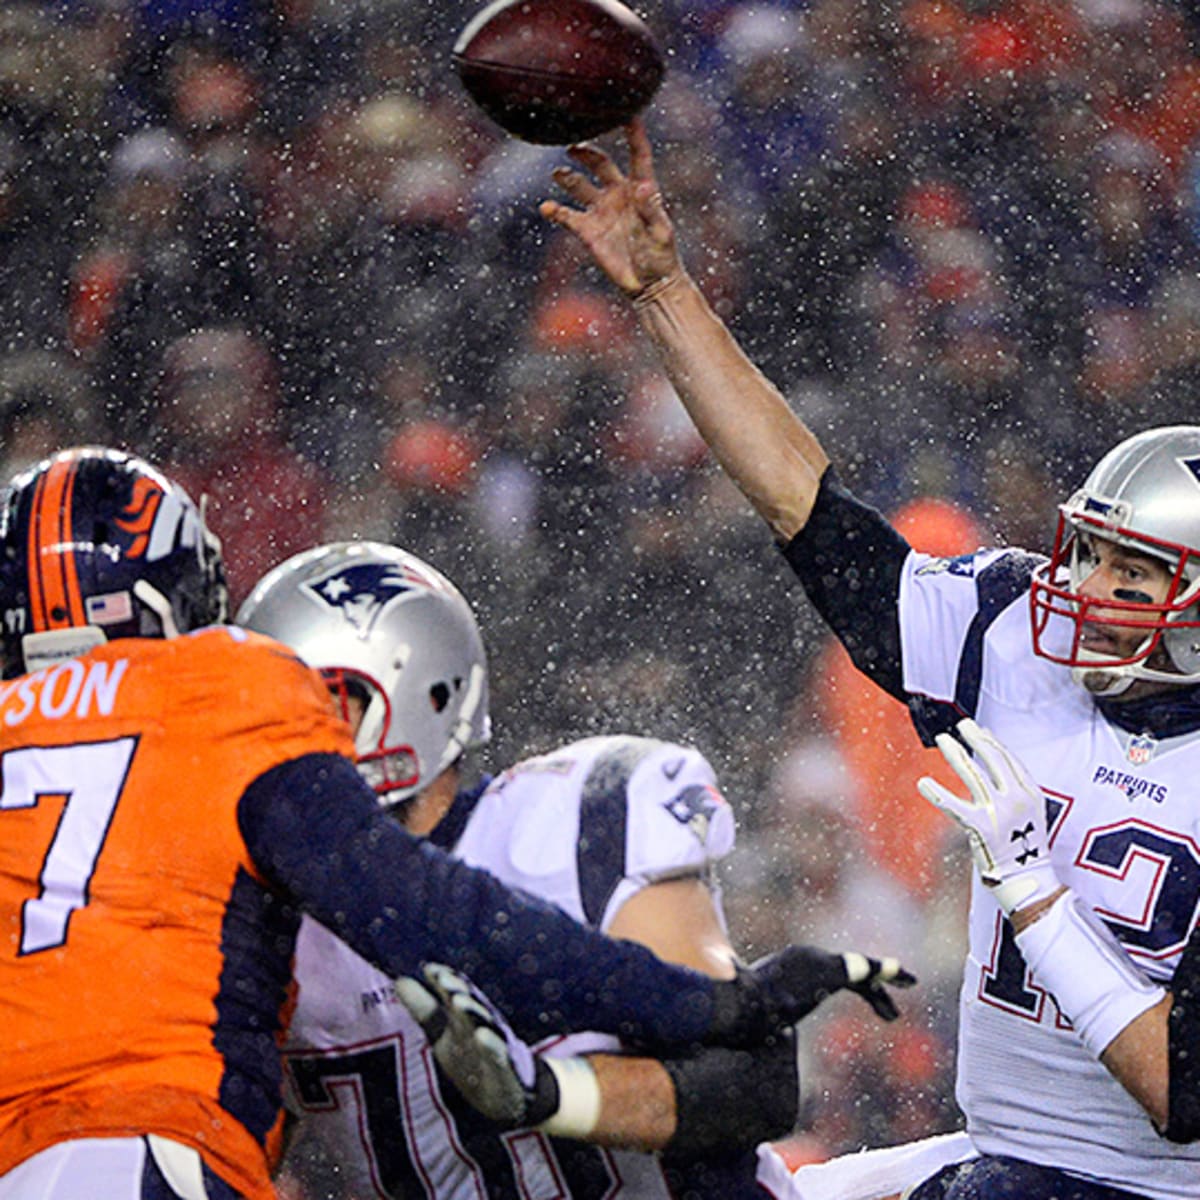 NFL Week 1 Monday Night Football, Peyton Manning ratings - Sports